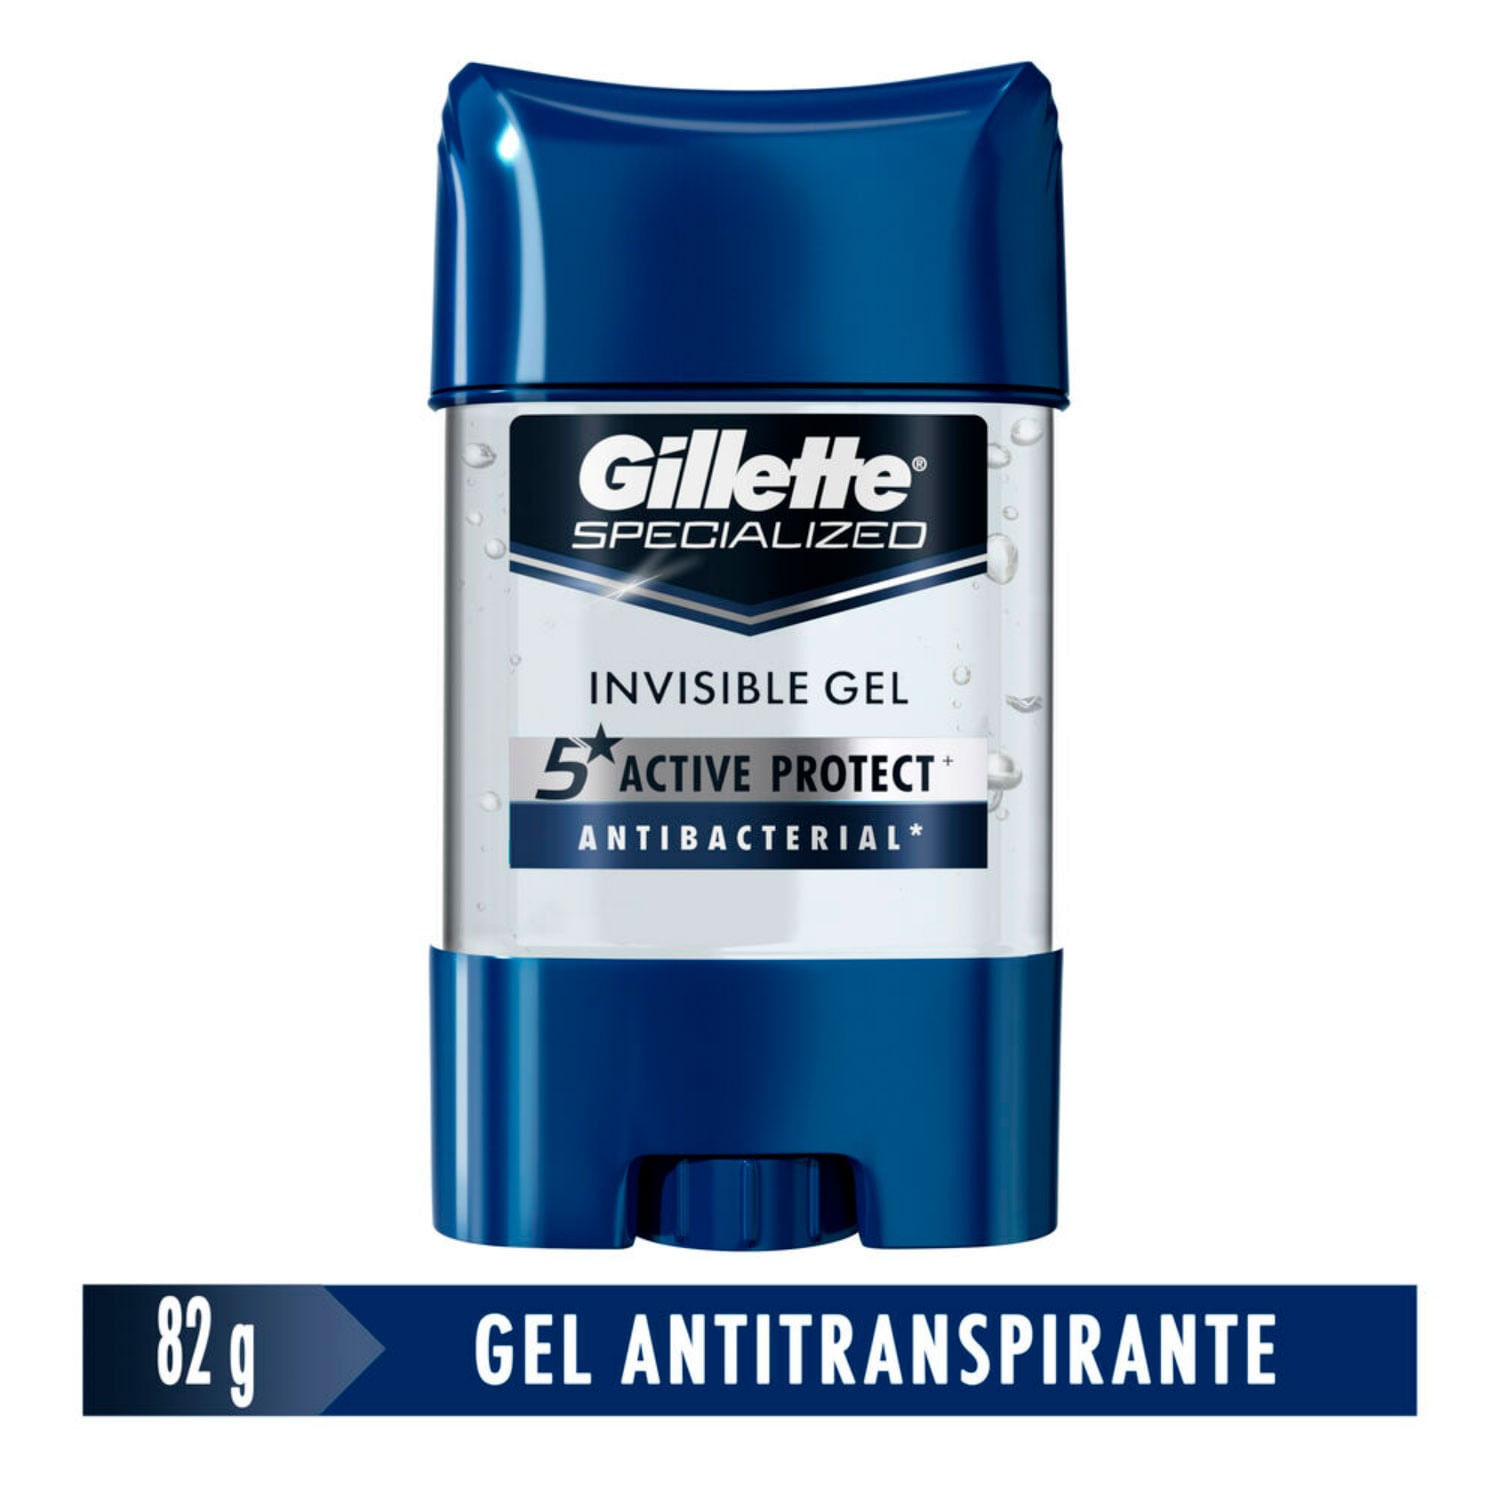 Las mejores ofertas en Gel Gillette Hombres Desodorantes